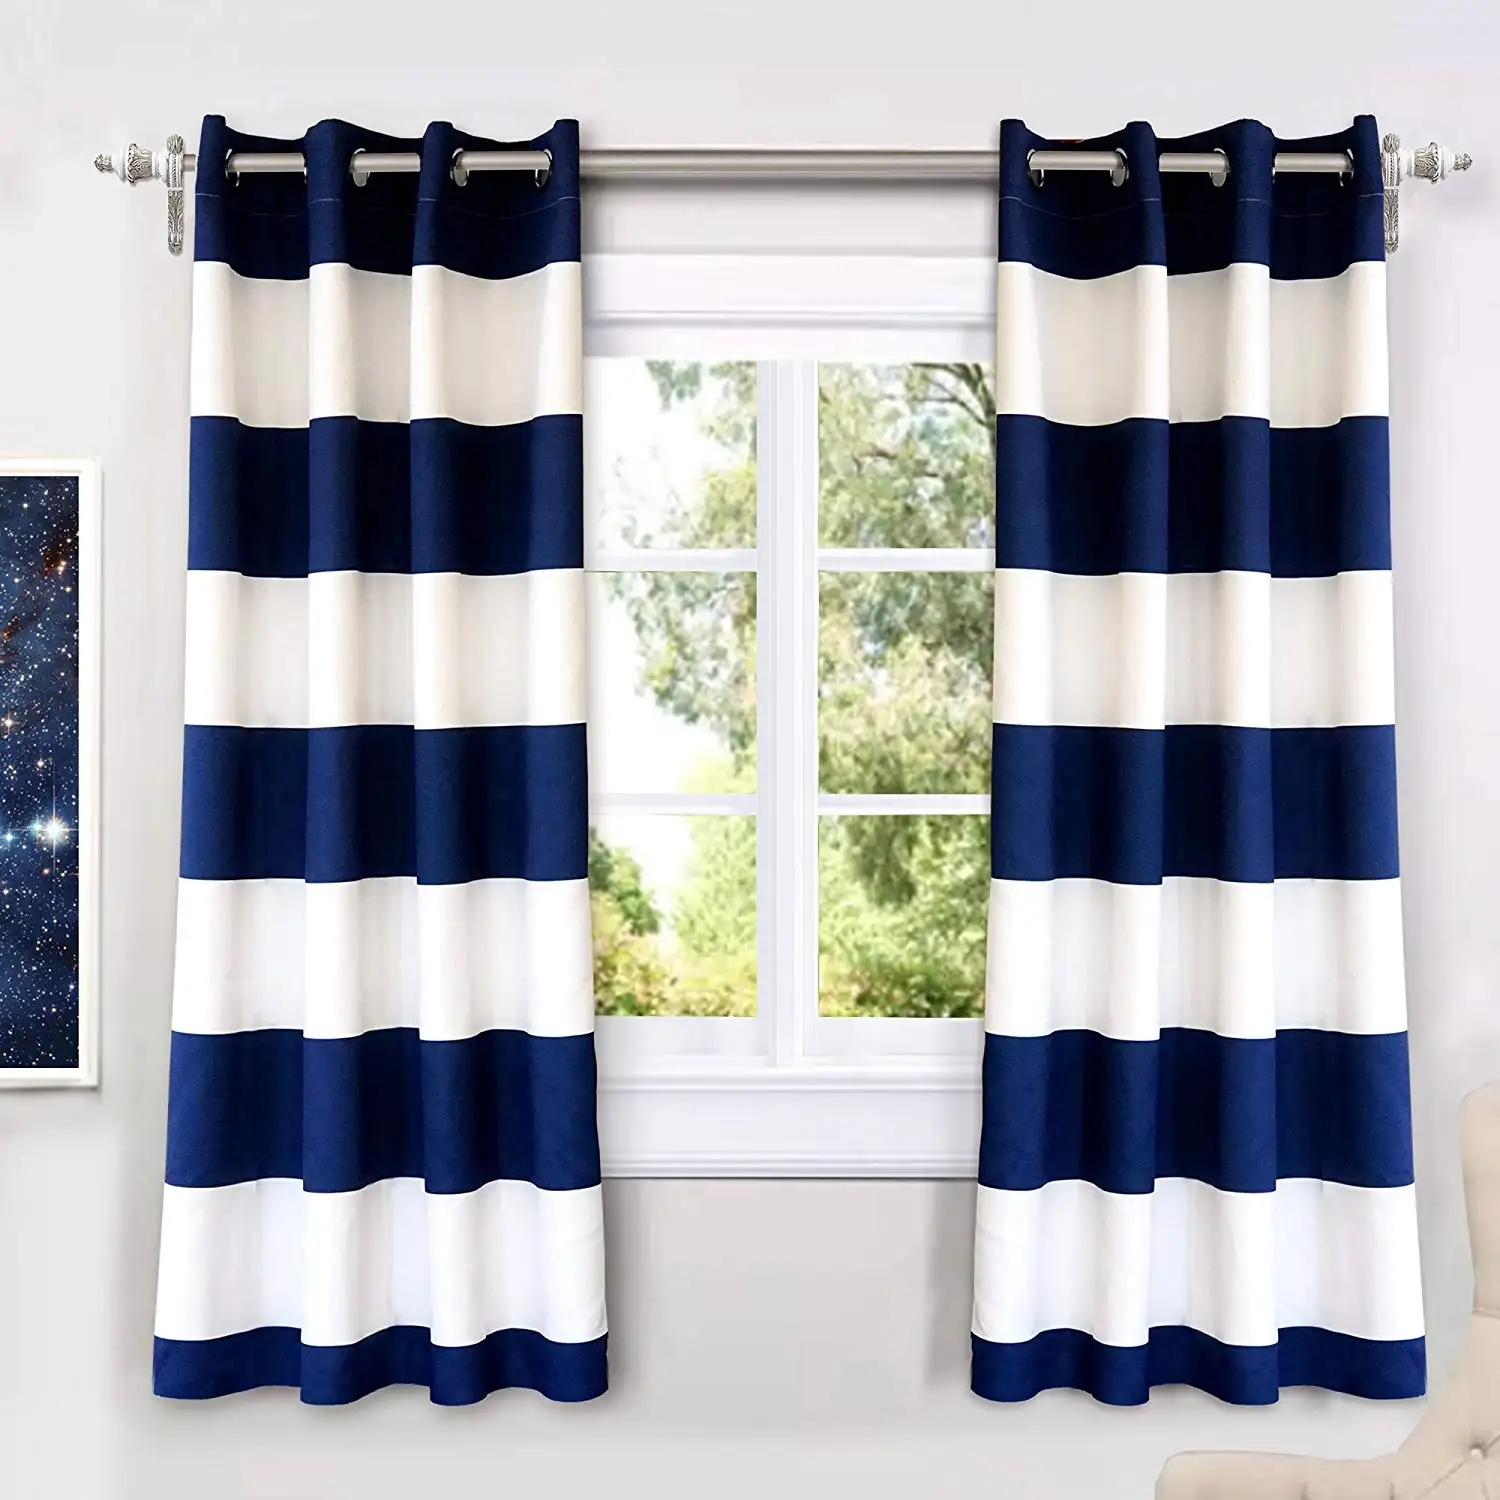 Cortinas modernas con diseño de hojas, cortina opaca para sala de estar, 2020